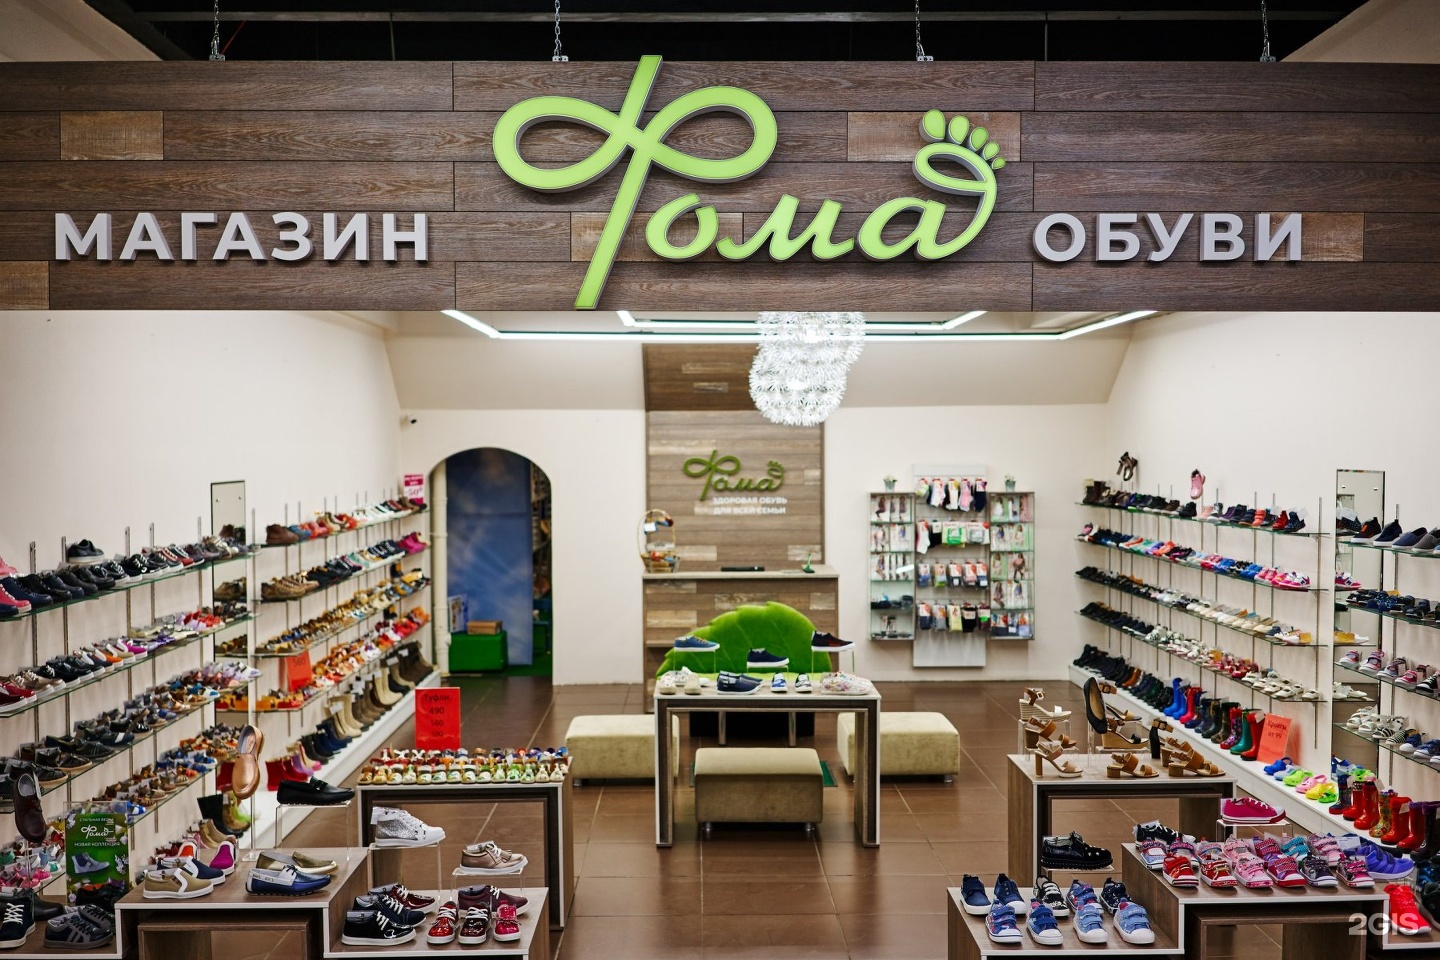 Интернет Магазин Детской Обуви Хабаровск